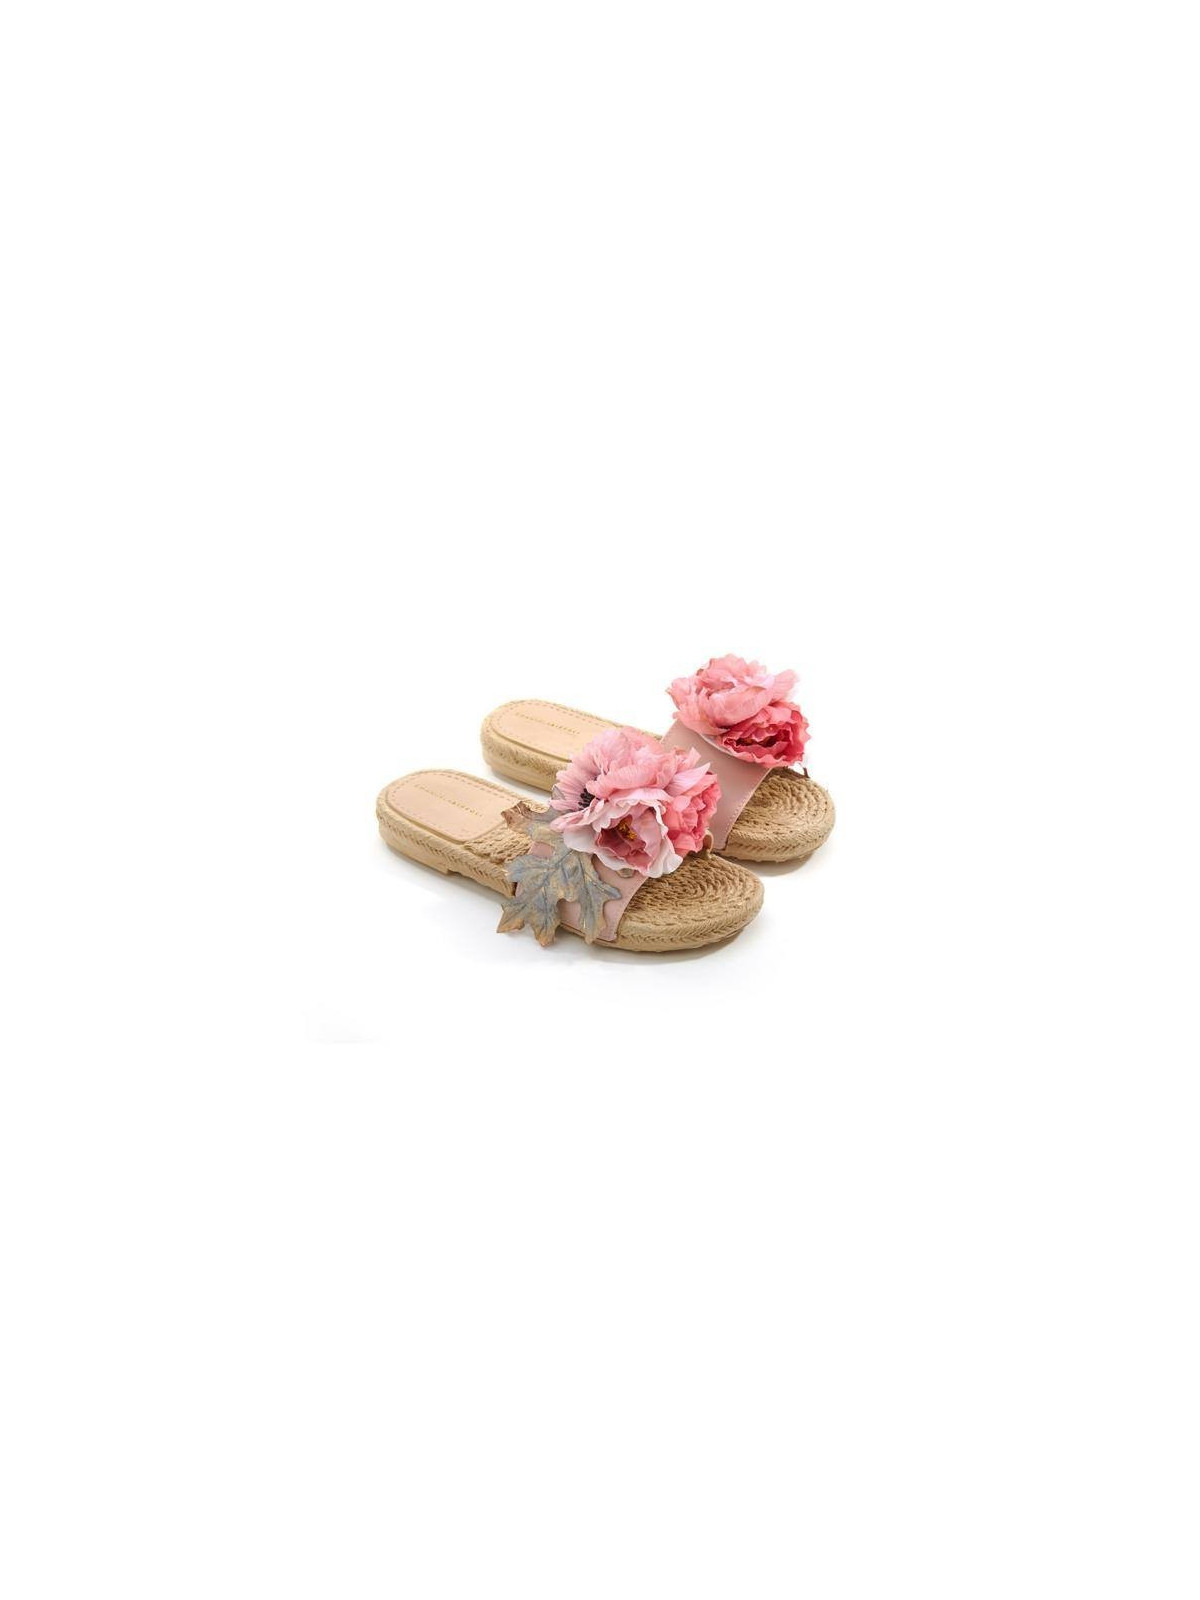 Biffoli Ciabatta in PVC con fiore rosa e foglia39,00 €